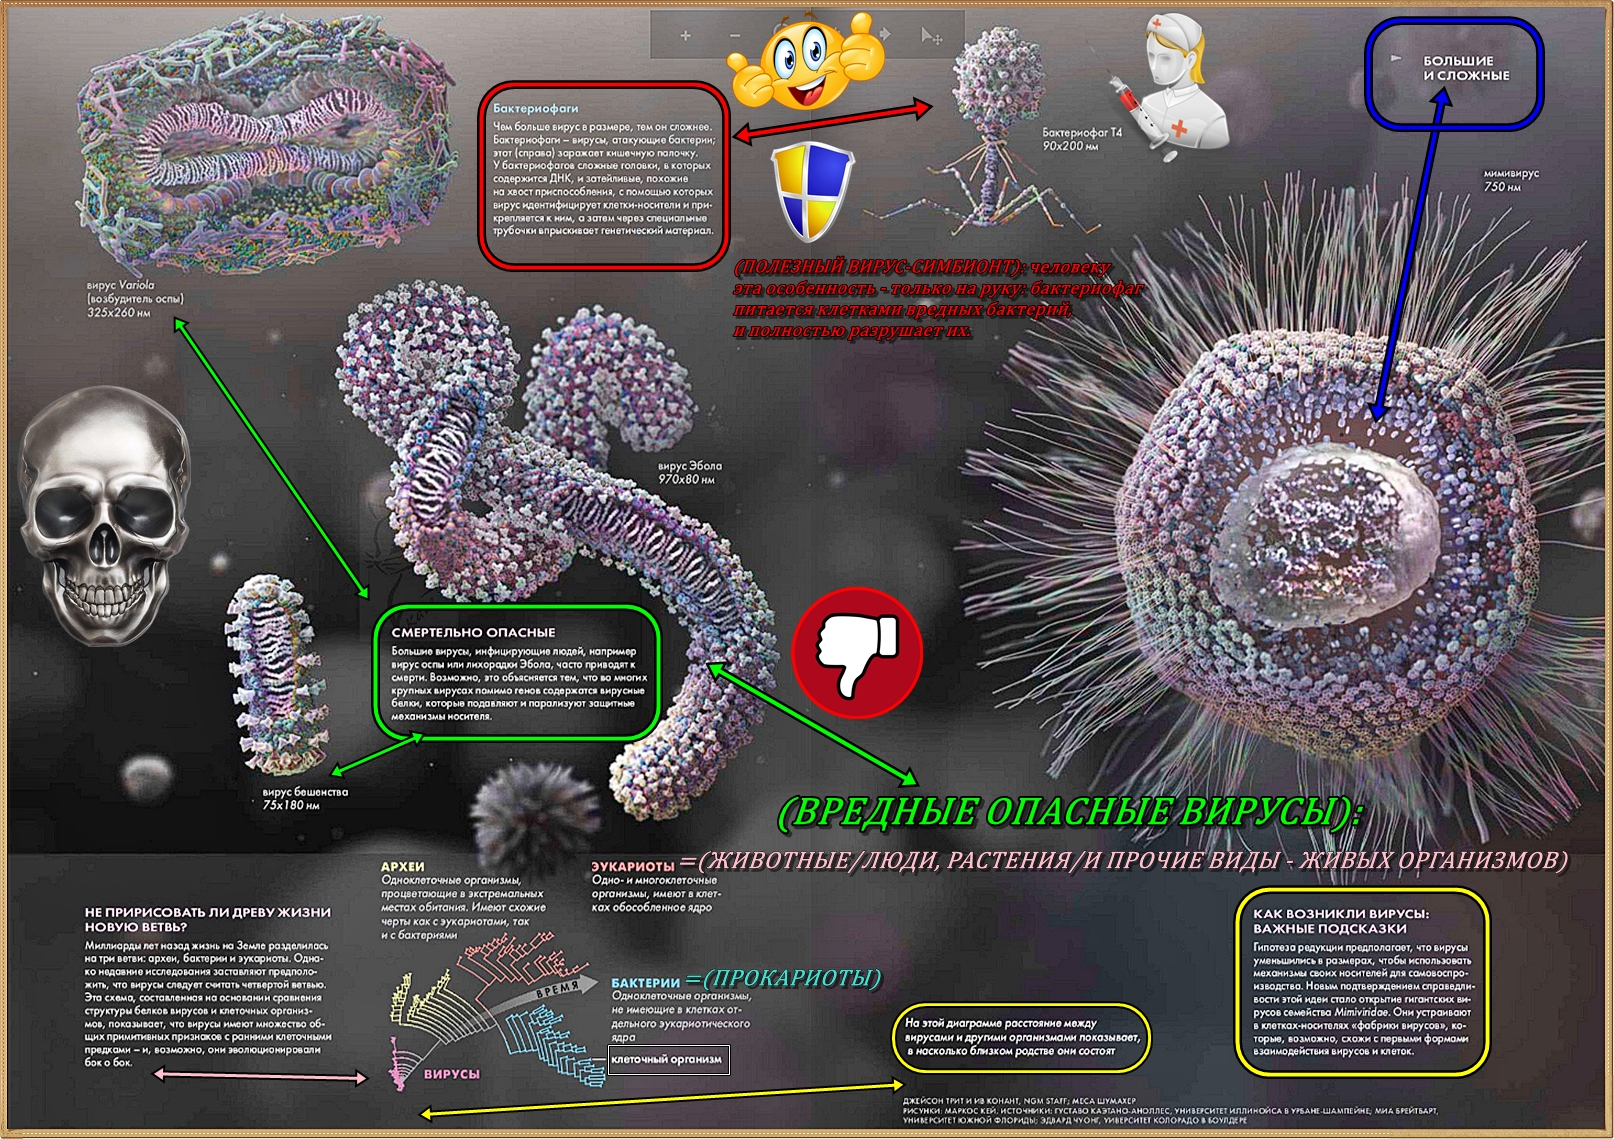 Вирусы способны размножаться только в живых клетках